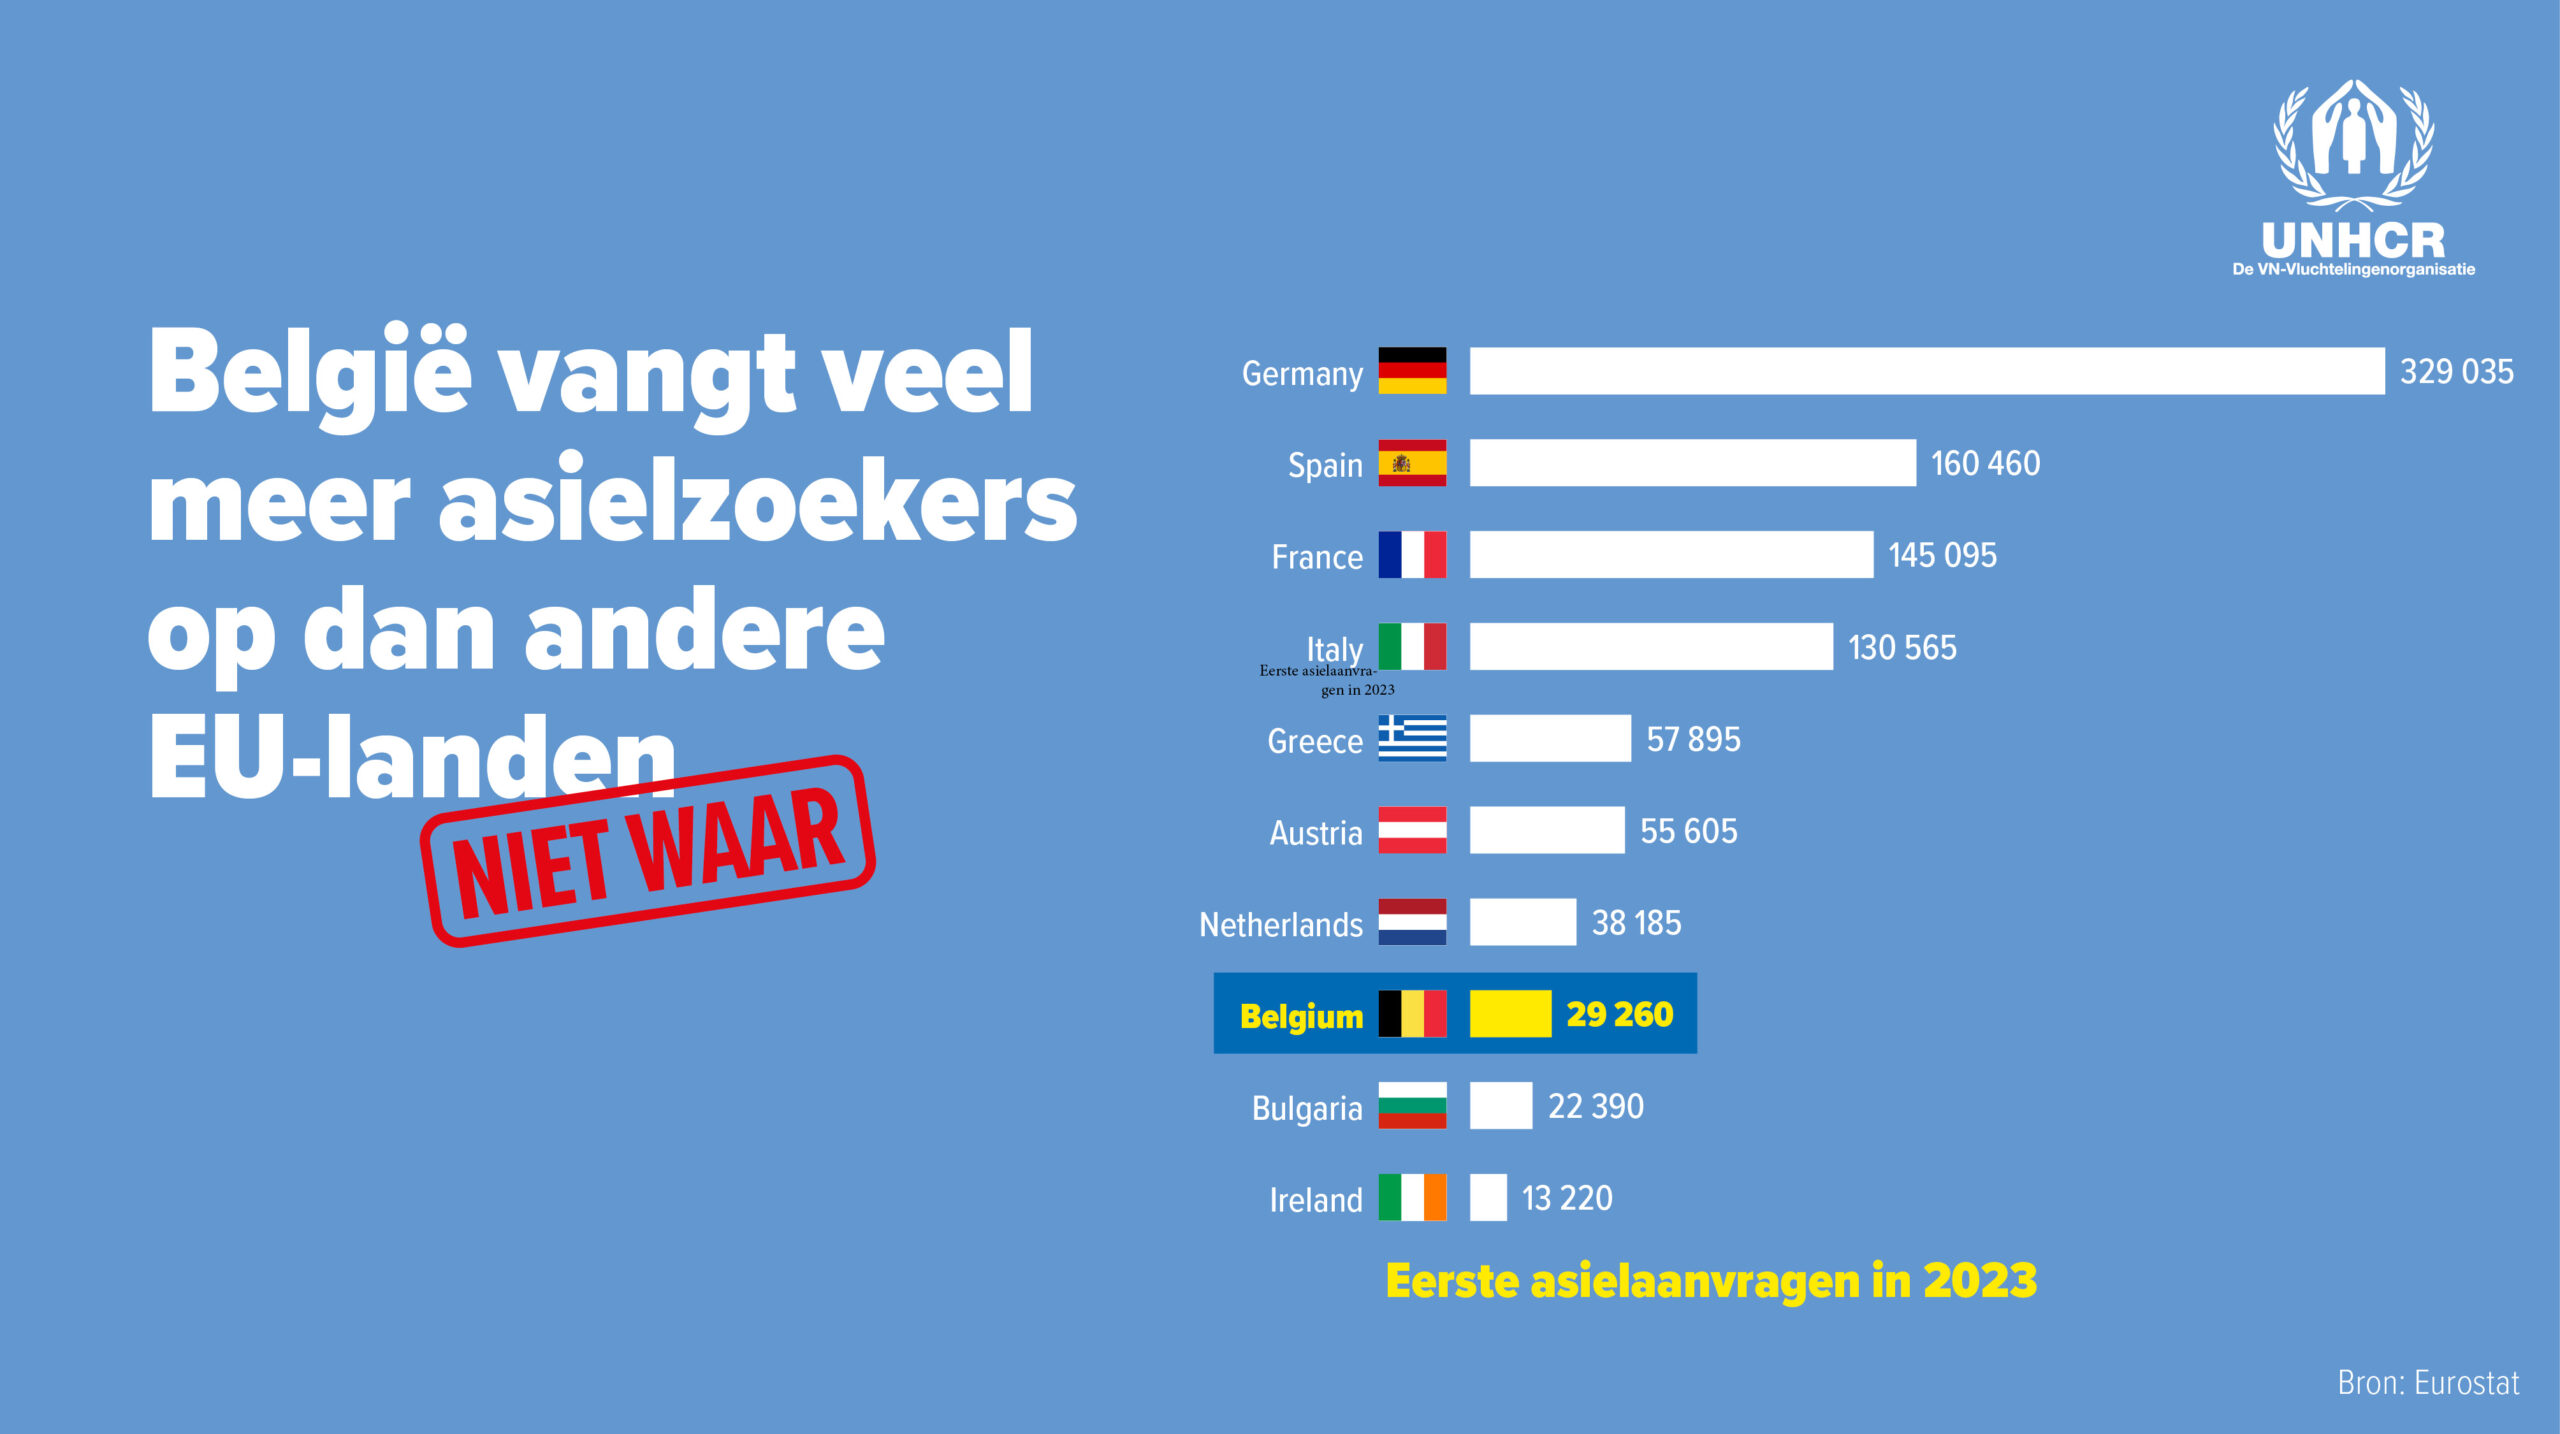 België vangt veel meer asielzoekers op dan andere EU-landen: Niet waar.